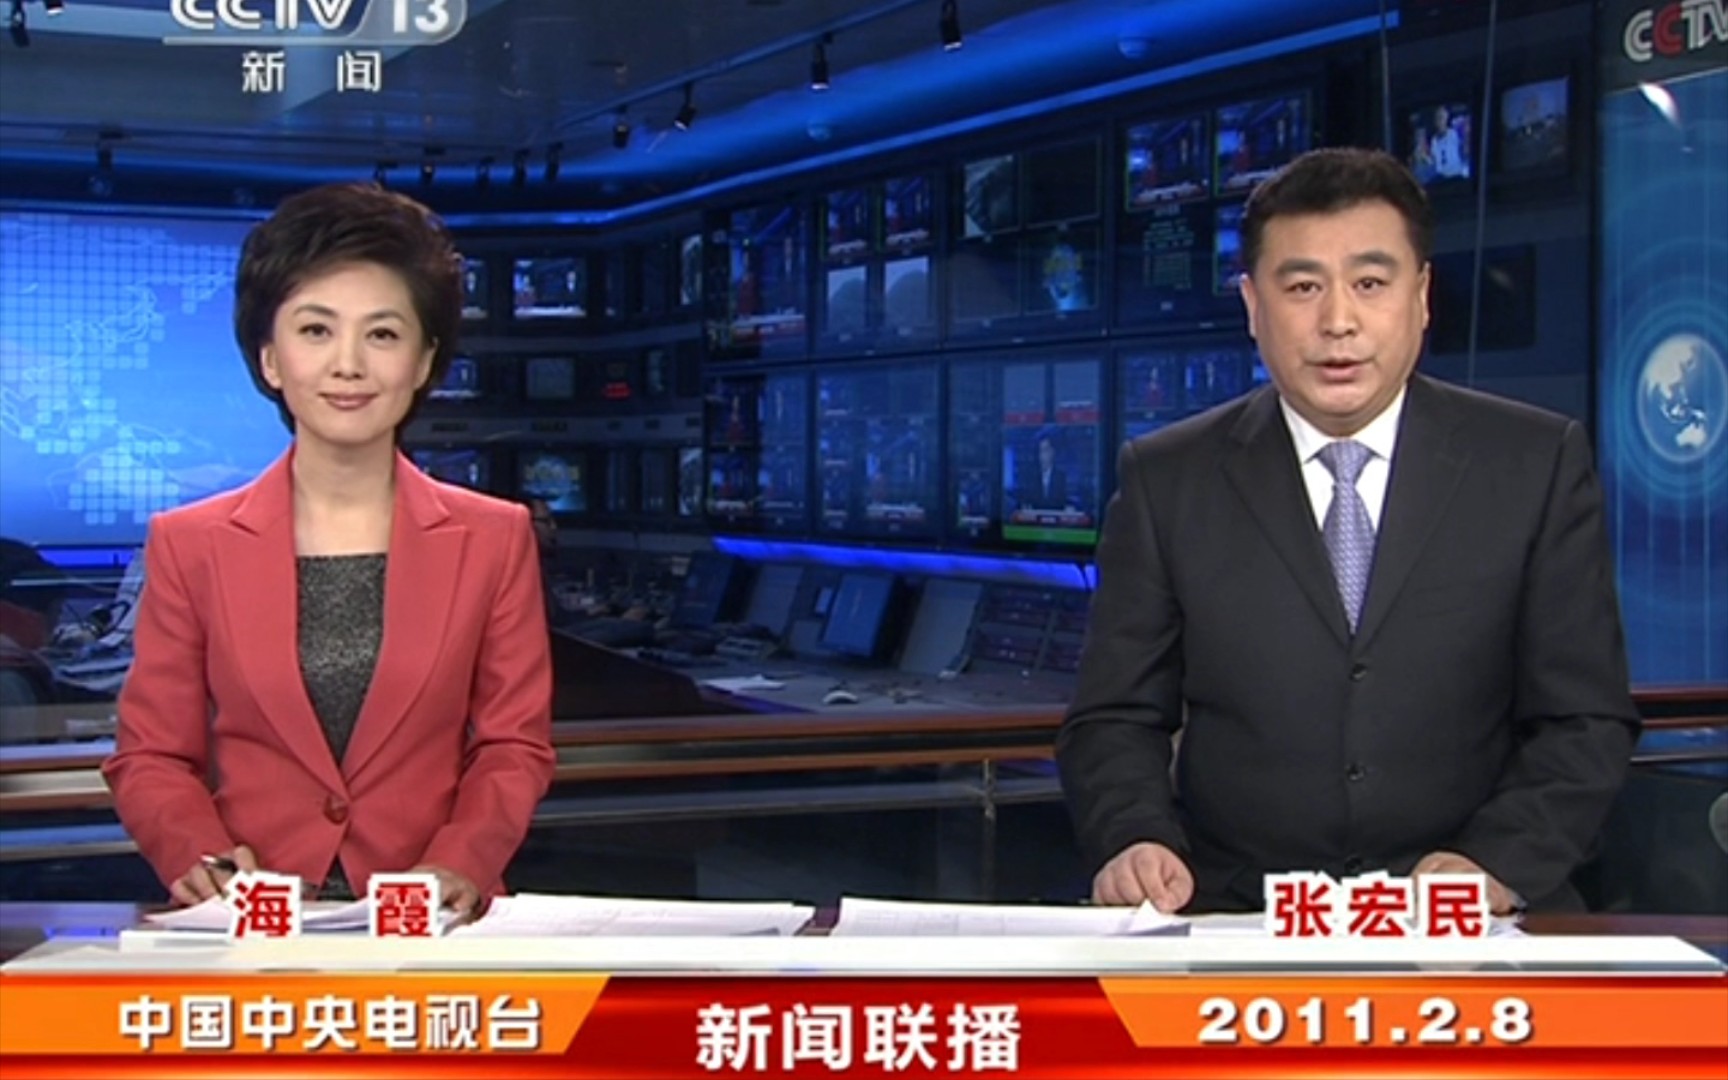 2011年2月8日《新闻联播》(CCTV-13新闻频道首播版)片头和片尾